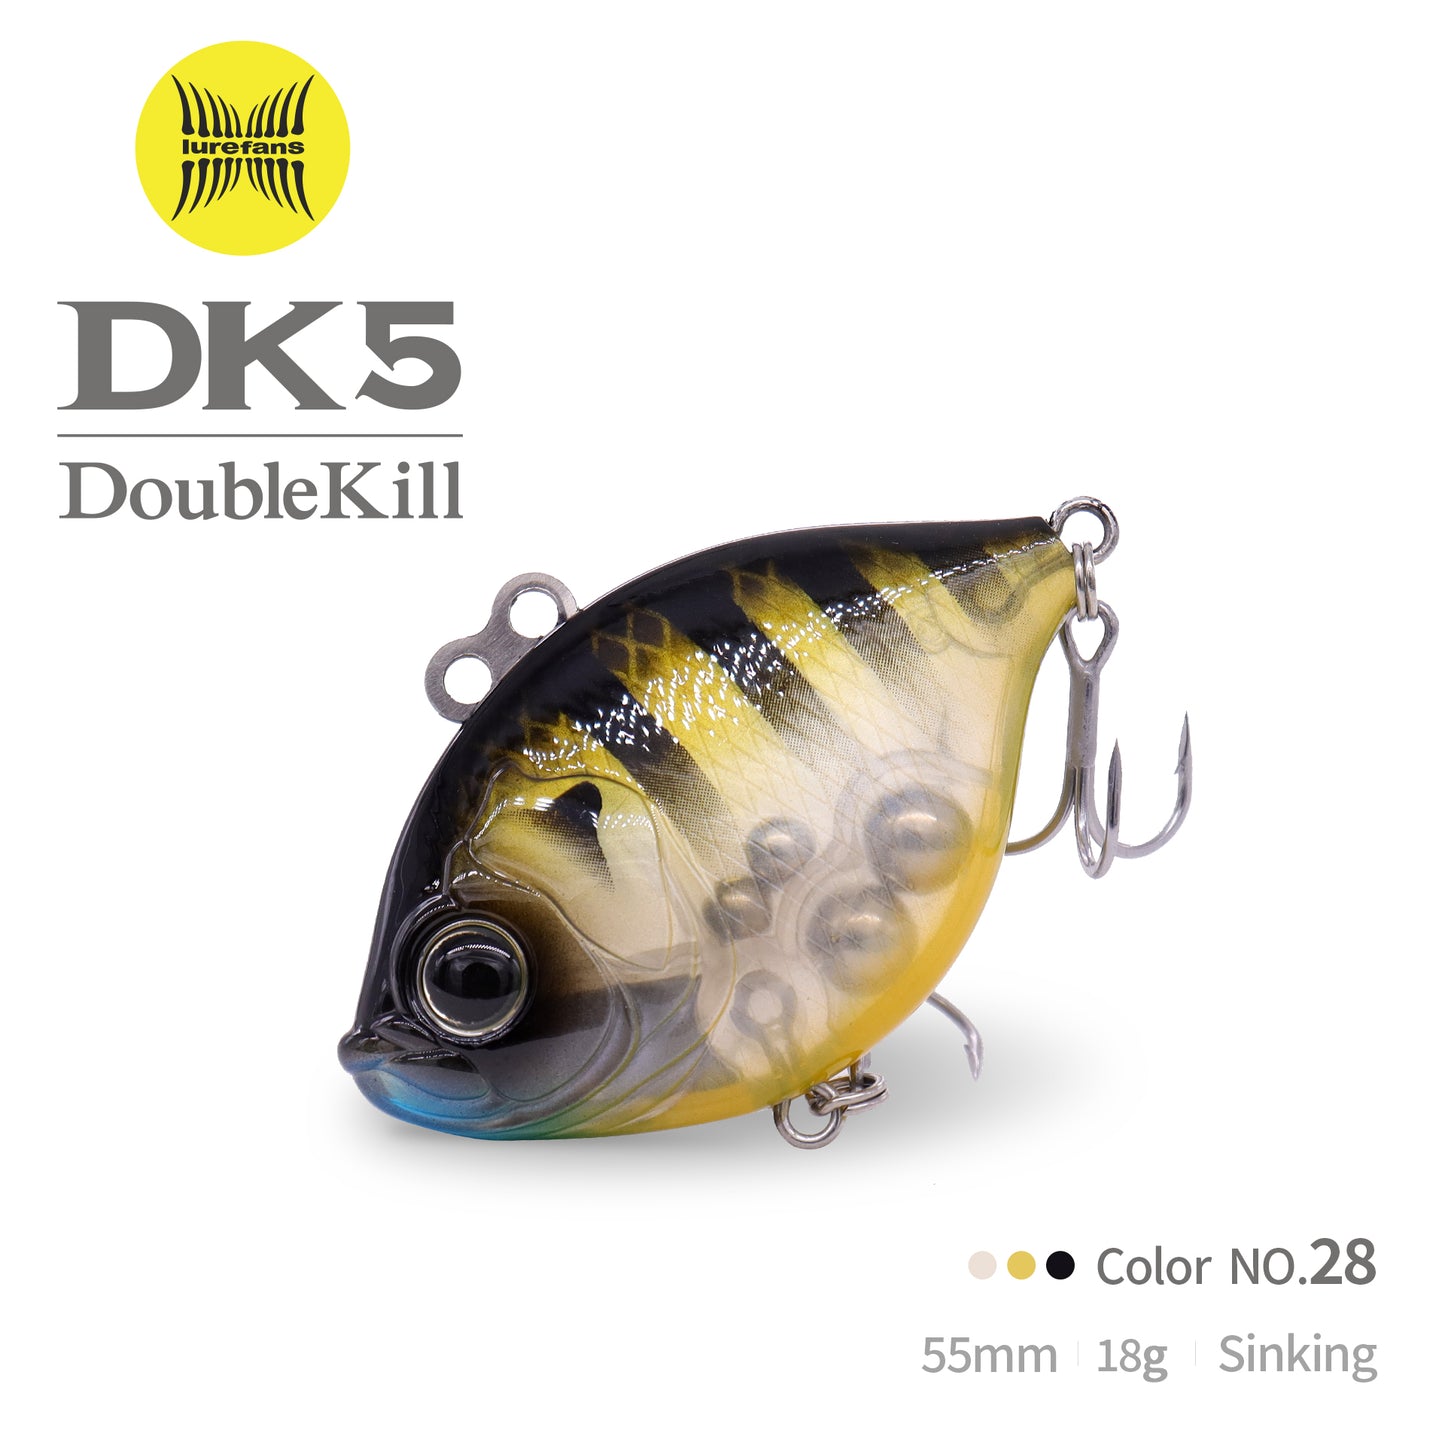 DK5